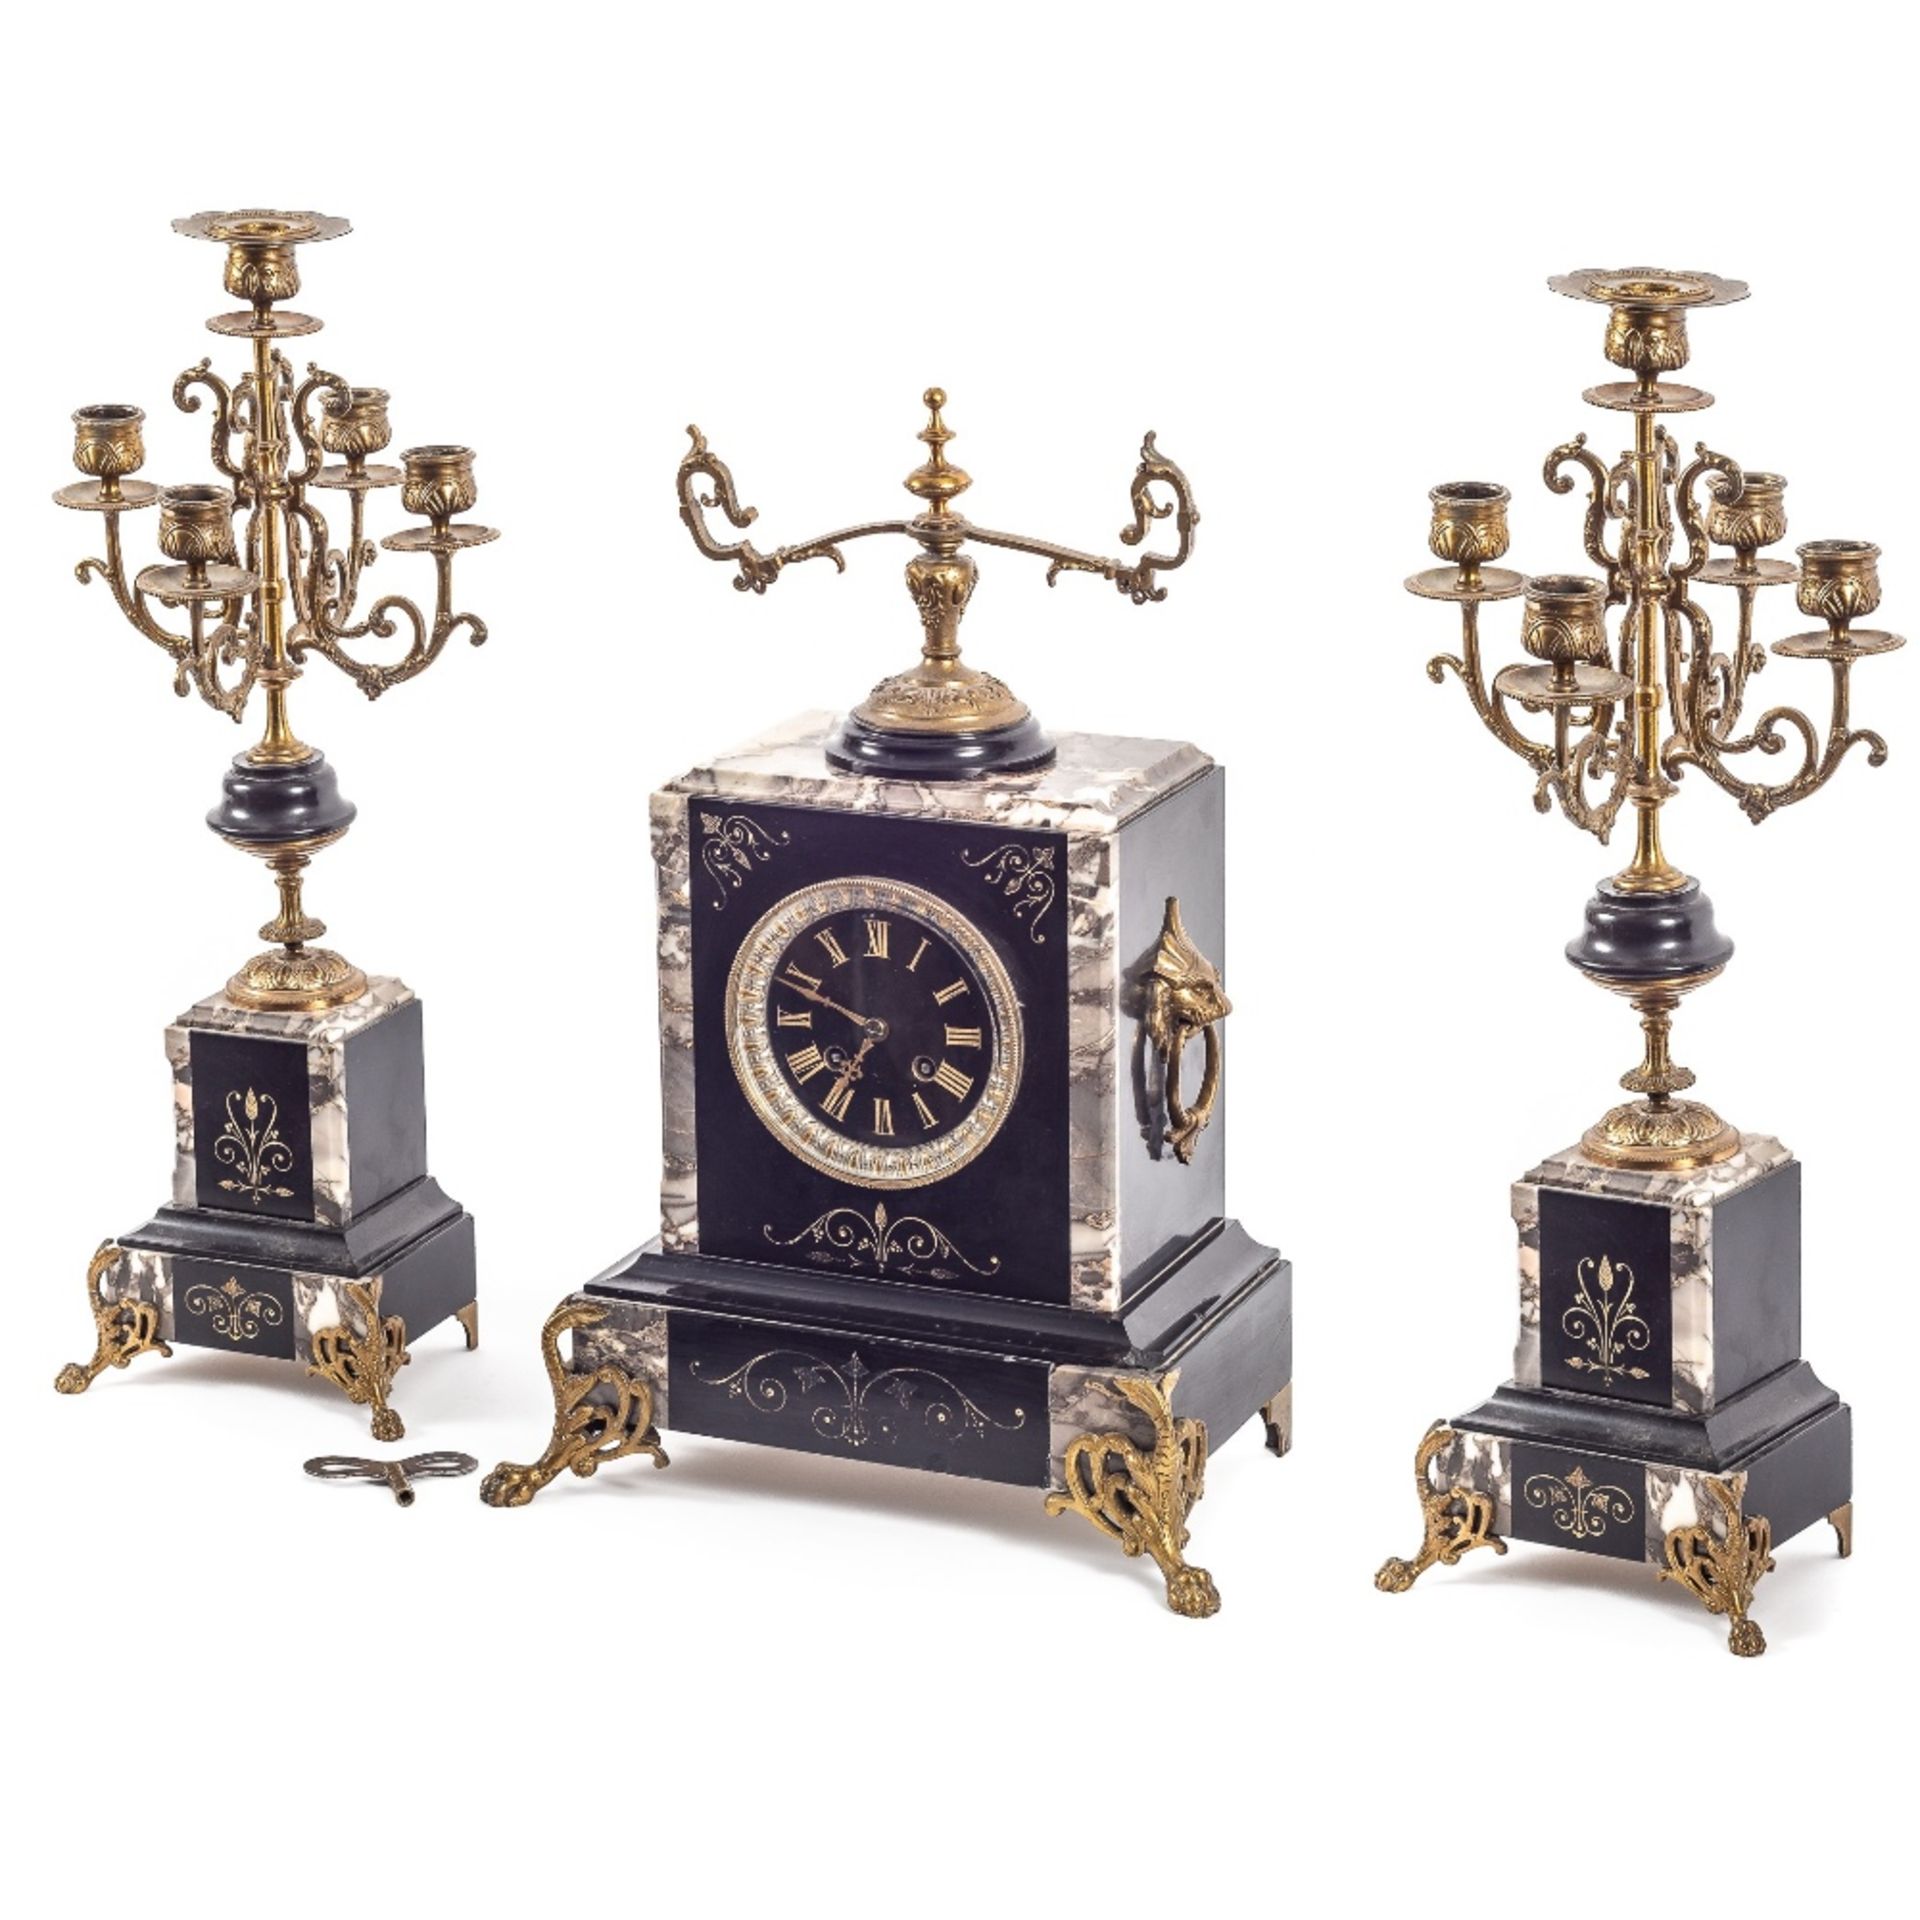 Reloj de sobremesa Napoleón III con pareja de candelabros de cinco luces. Francia, último cuarto del - Image 2 of 3